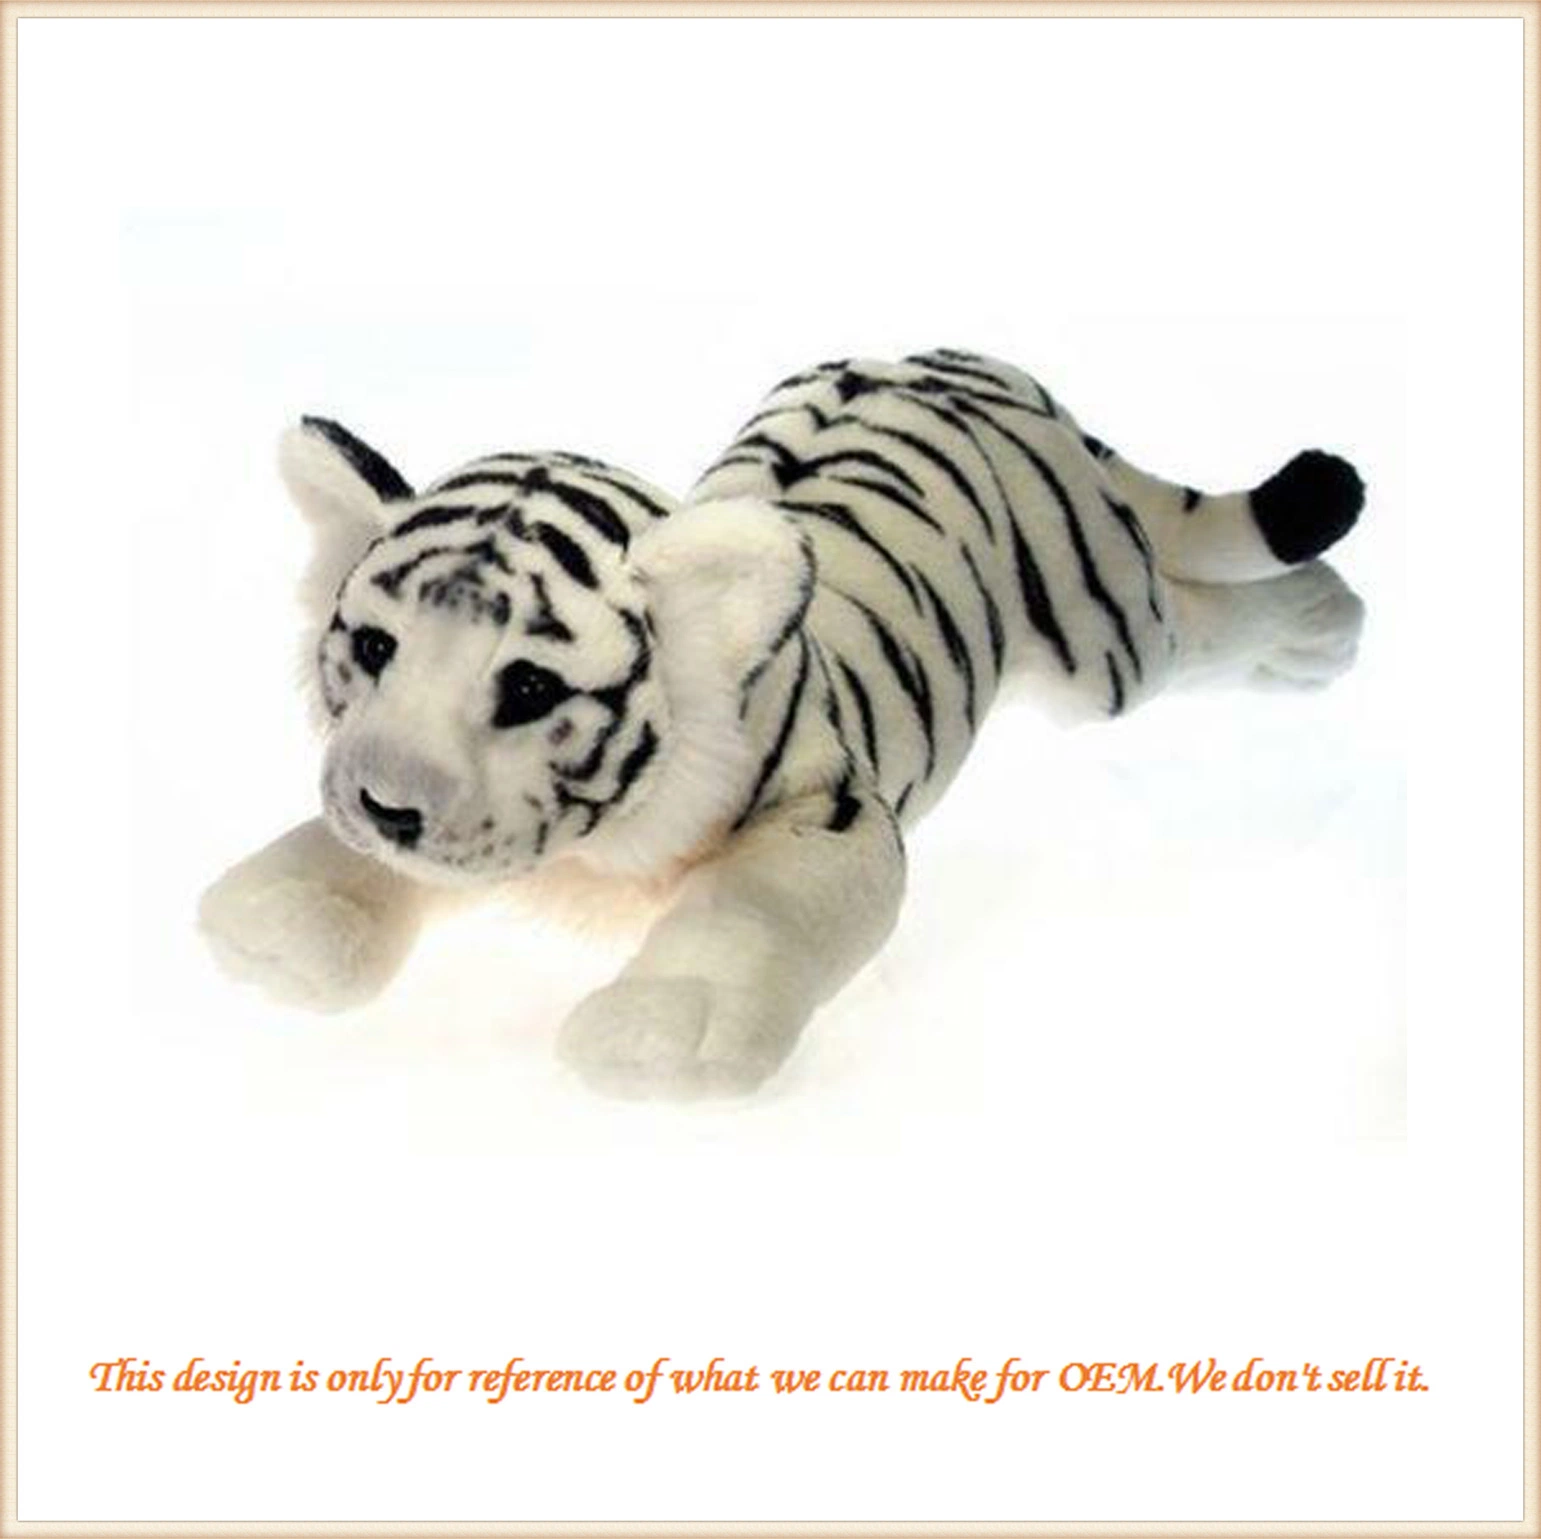 Hochwertige Tier Spielzeug Plüsch Tiger für Kinder